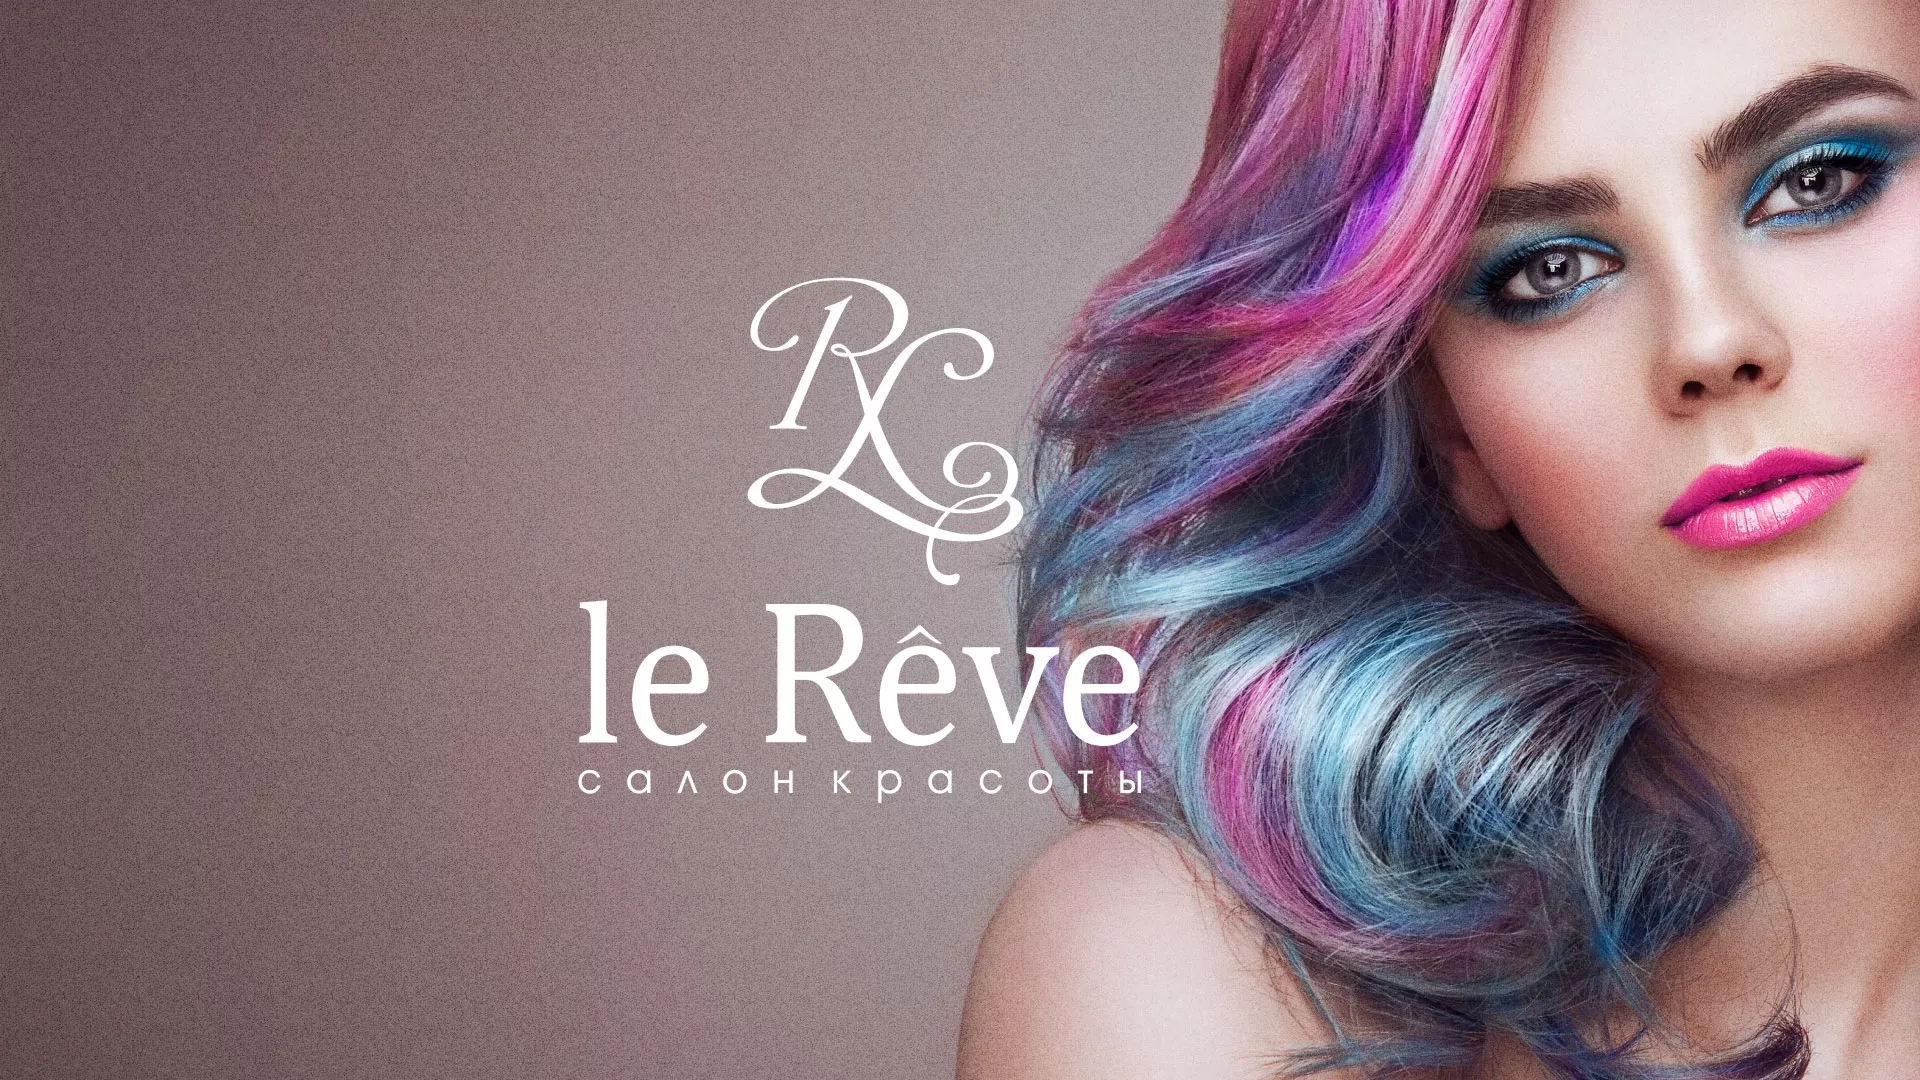 Создание сайта для салона красоты «Le Reve» в Ломоносове